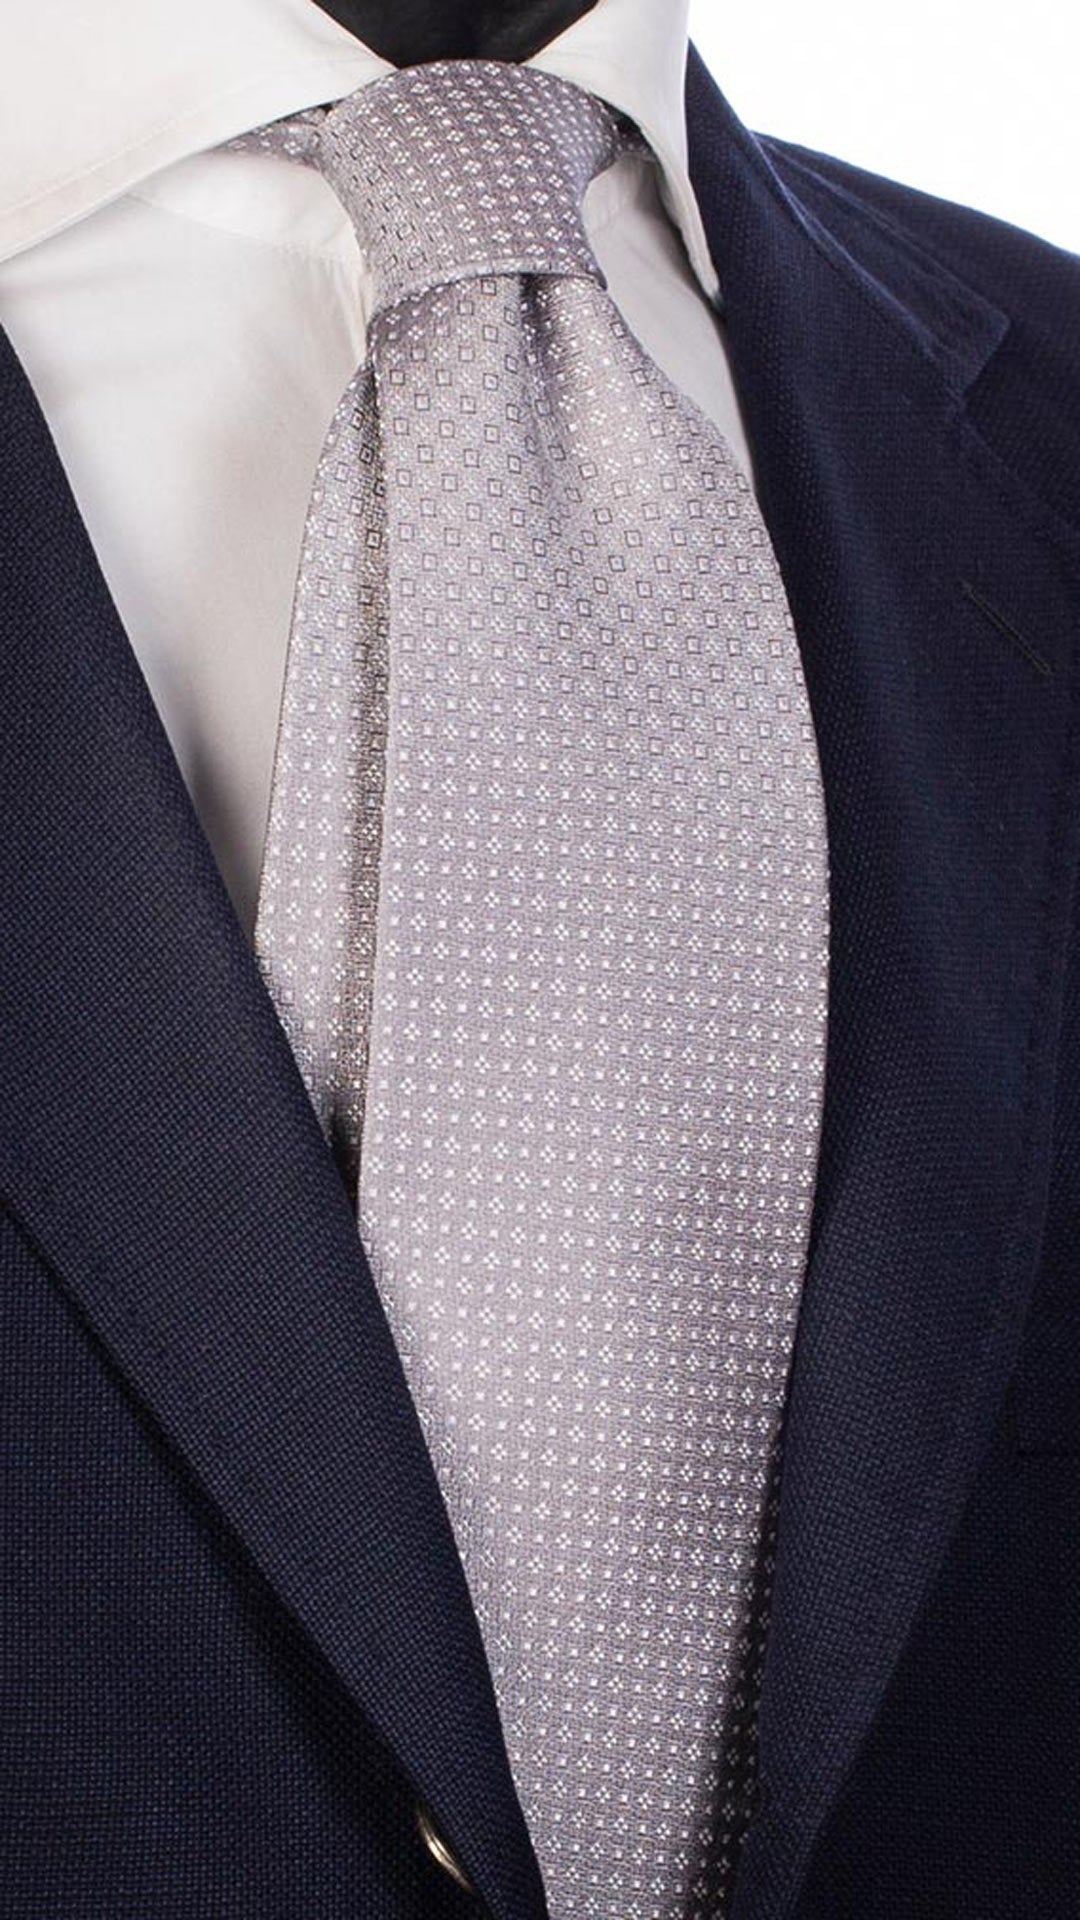 Cravatta da Cerimonia di Seta Grigio Chiaro Fantasia Bianca CY4723 Made in Italy Graffeo Cravatte